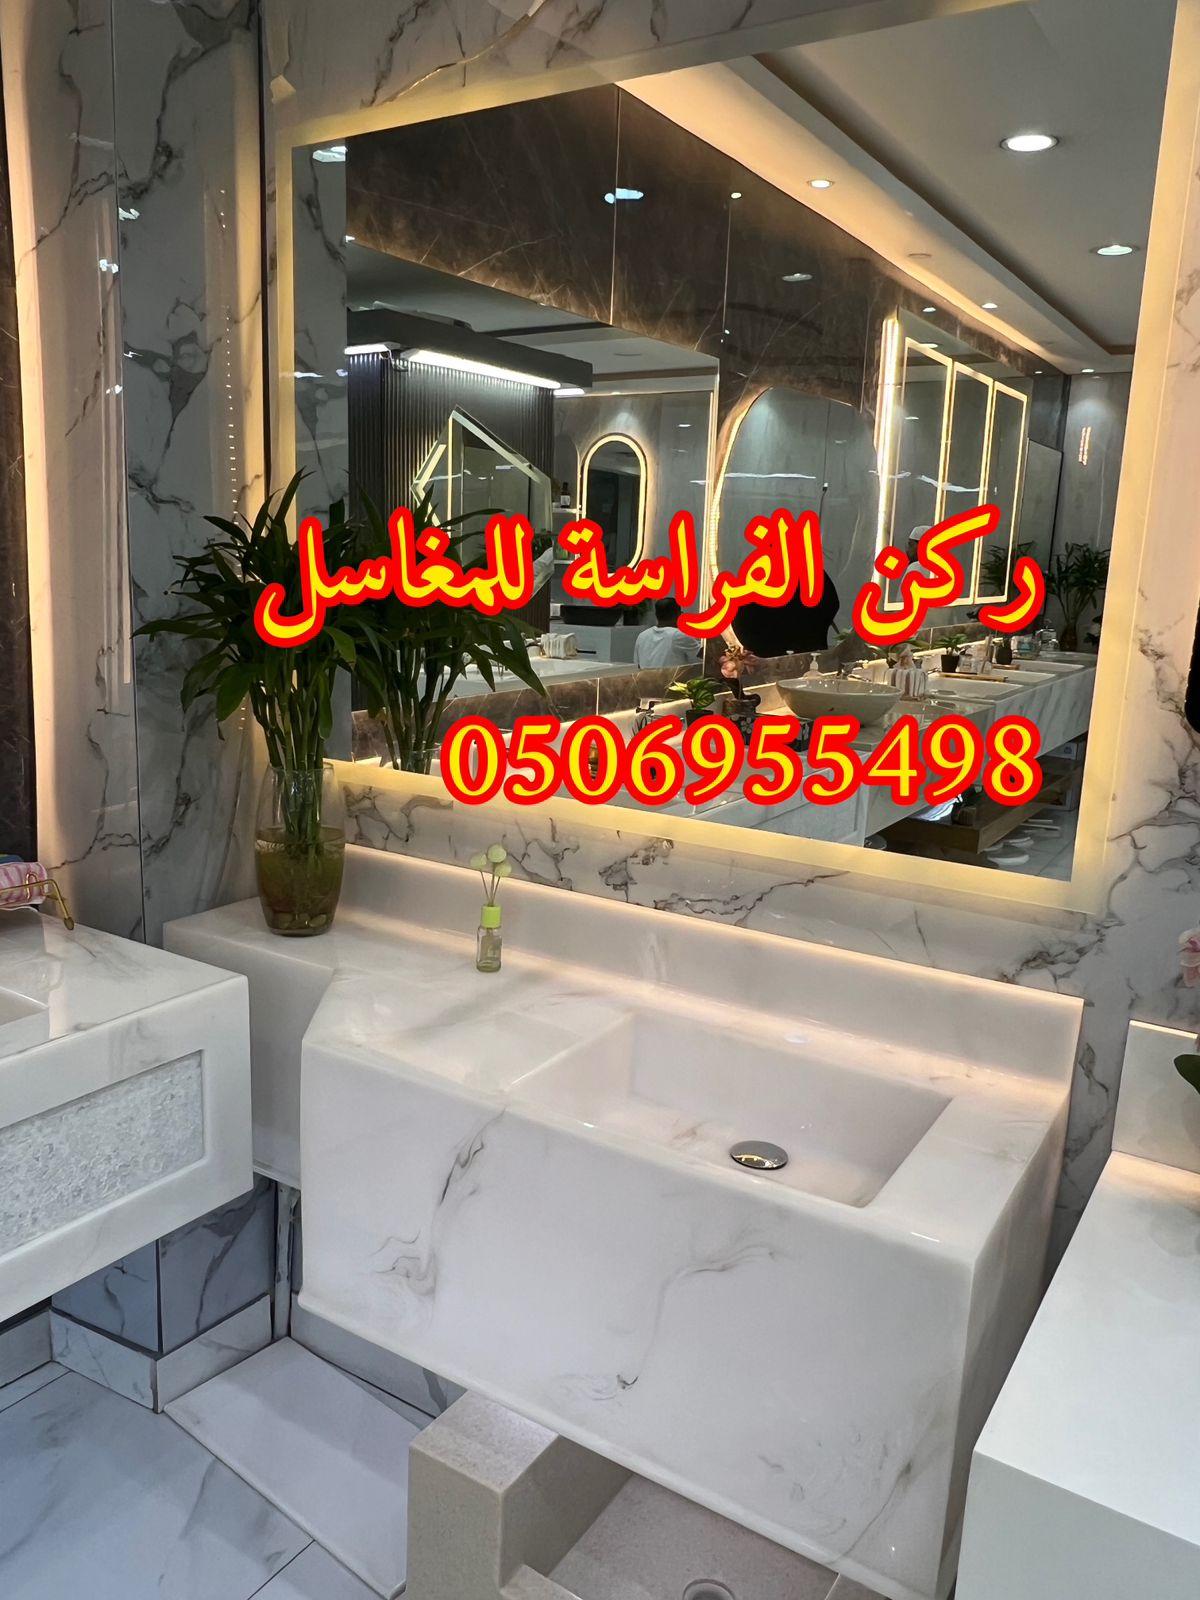 الرياض - تفصيل ديكورات مغاسل حمامات رخام في الرياض,0506955498 589658231